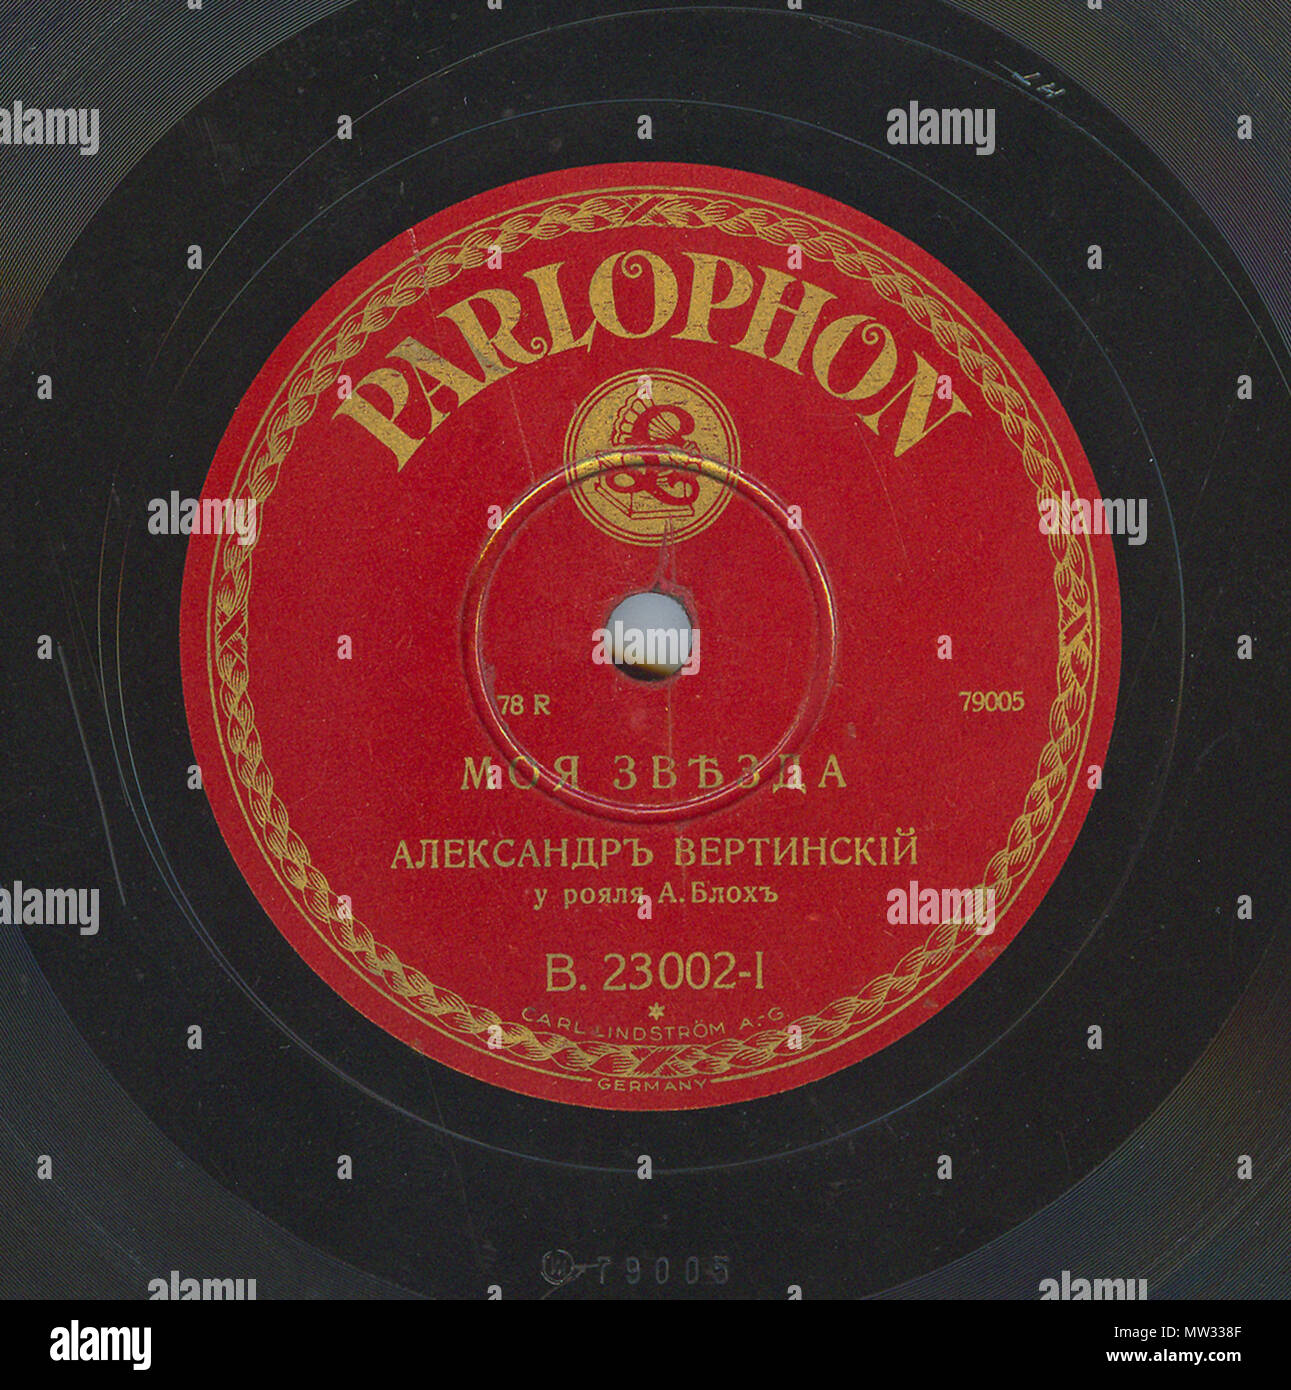 . Englisch: Vertinsky Parlophone B.23002 01. 6. April 2010, 12:08:13. Parlophone 629 Vertinsky Parlophone B.23002, 01. Stockfoto